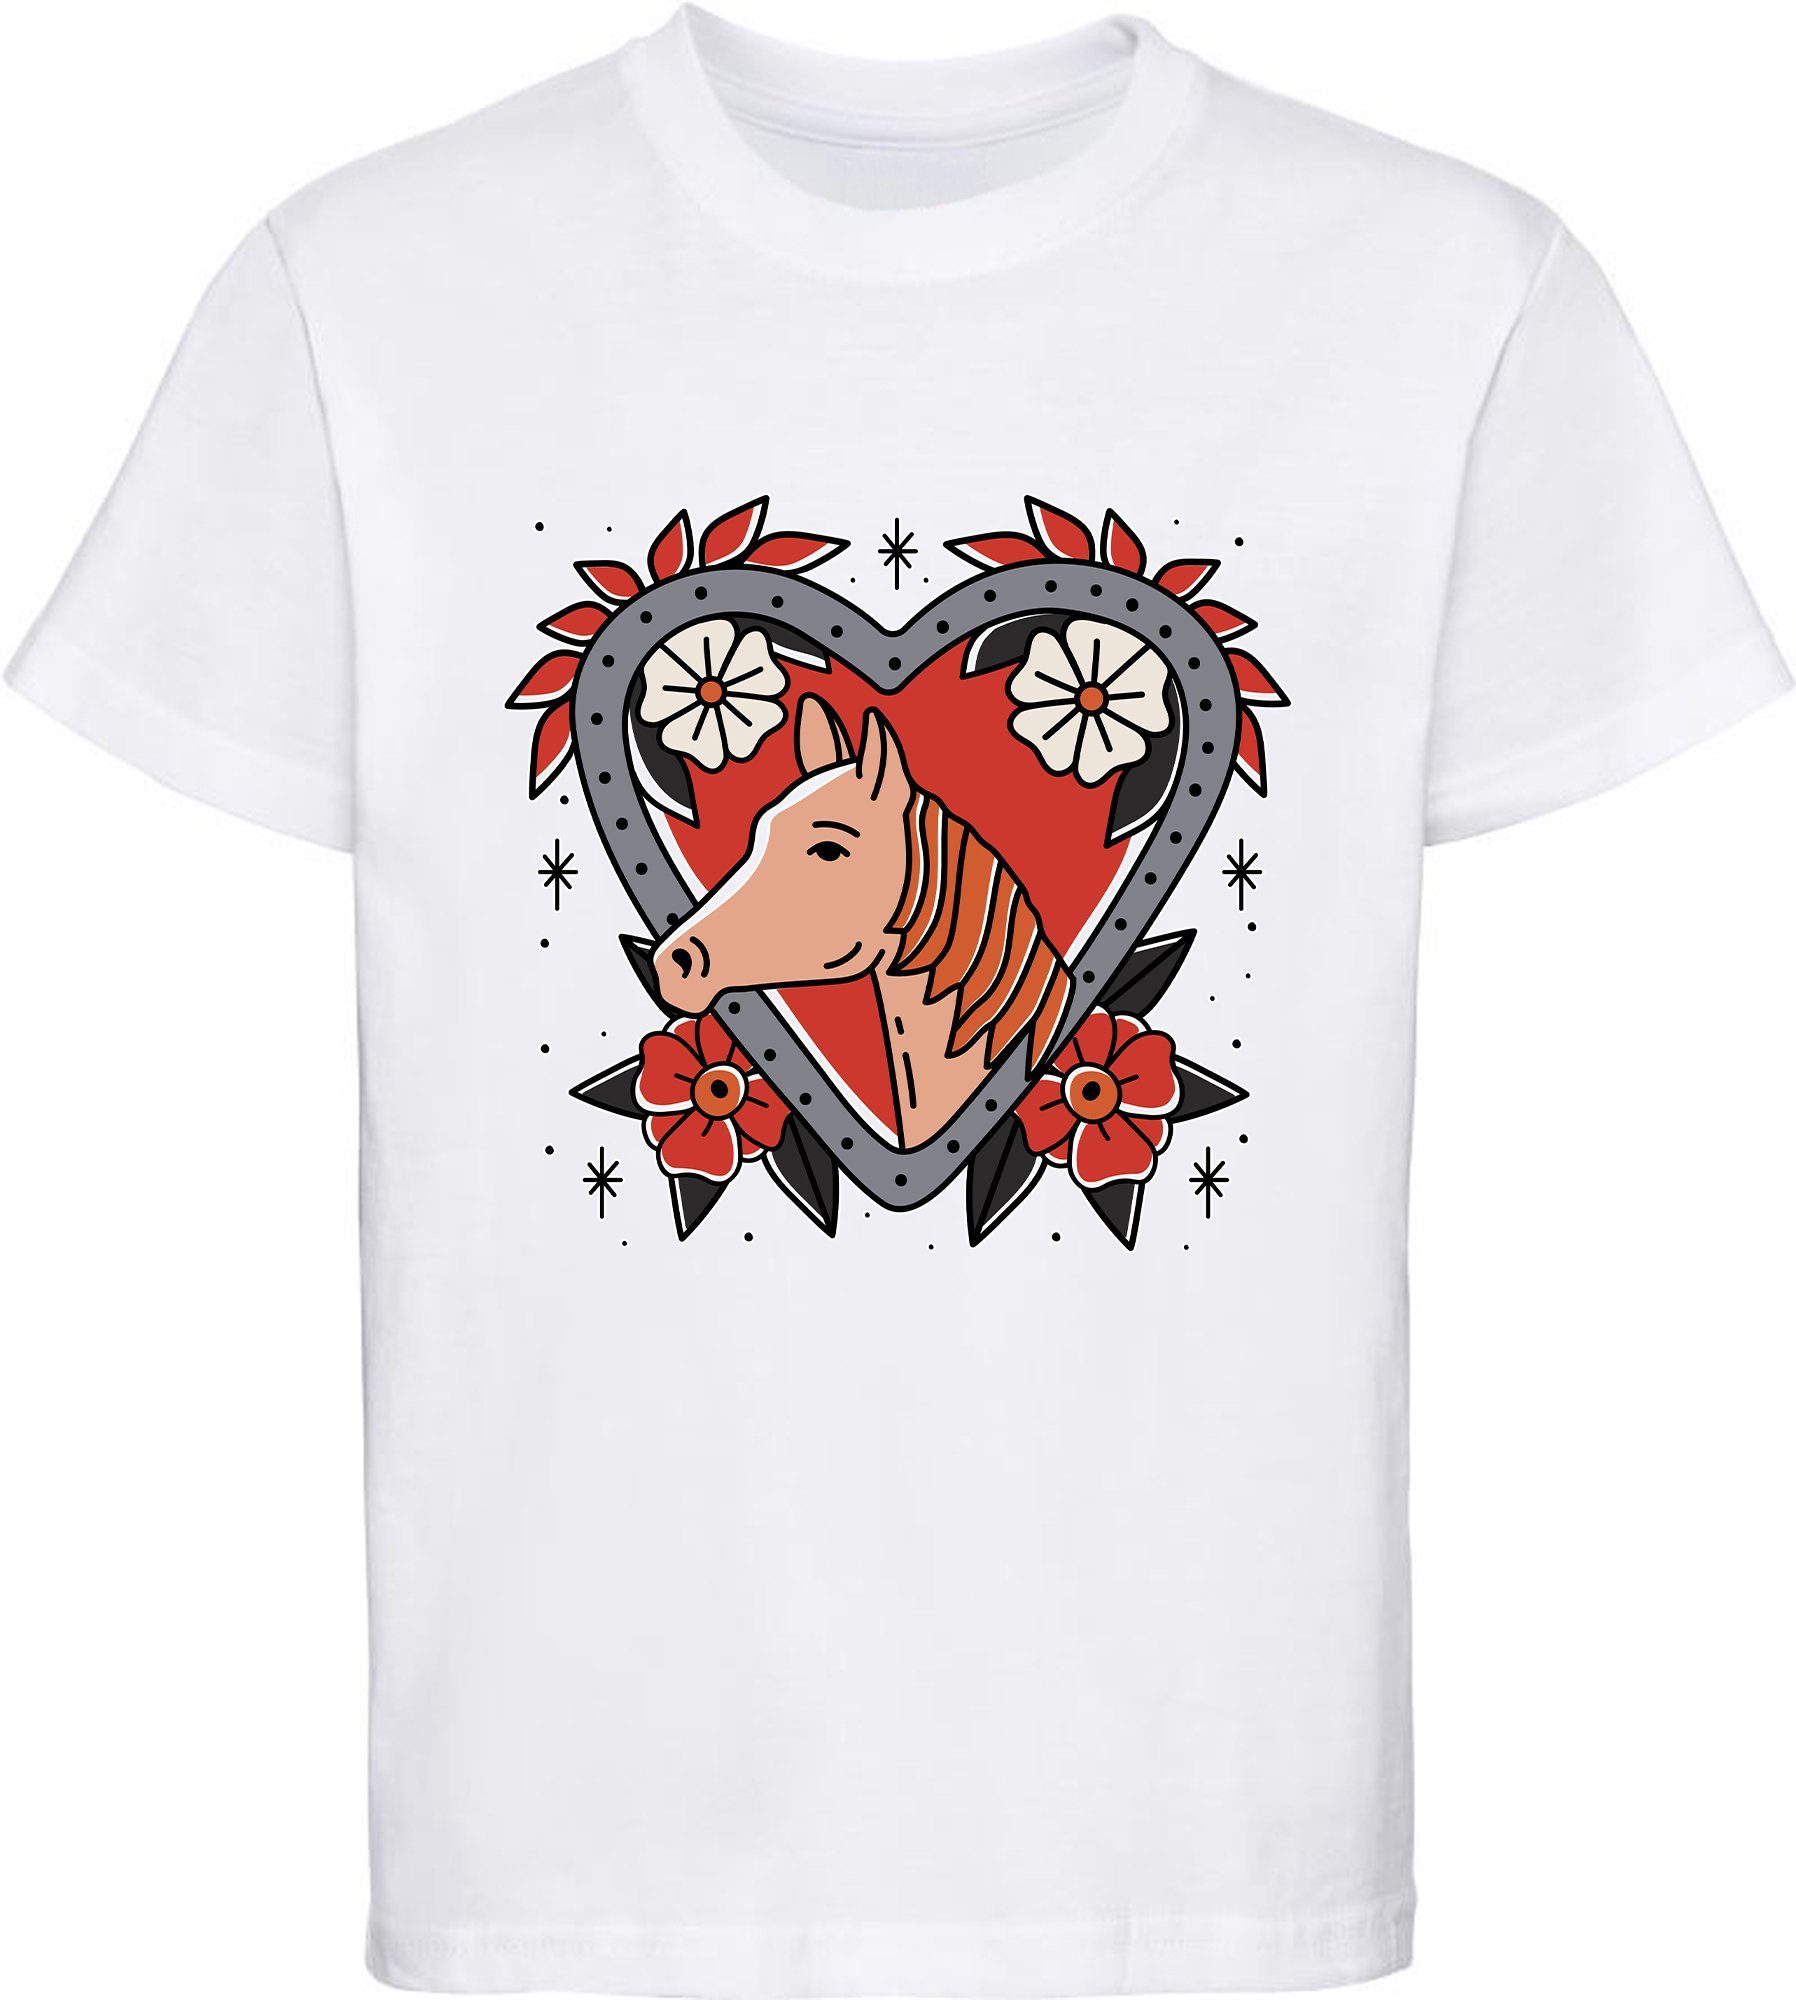 MyDesign24 Print-Shirt bedrucktes Mädchen T-Shirt mit Pferd im Blumenherz Baumwollshirt mit Aufdruck, weiß, schwarz, rot, rosa, i137 weiss